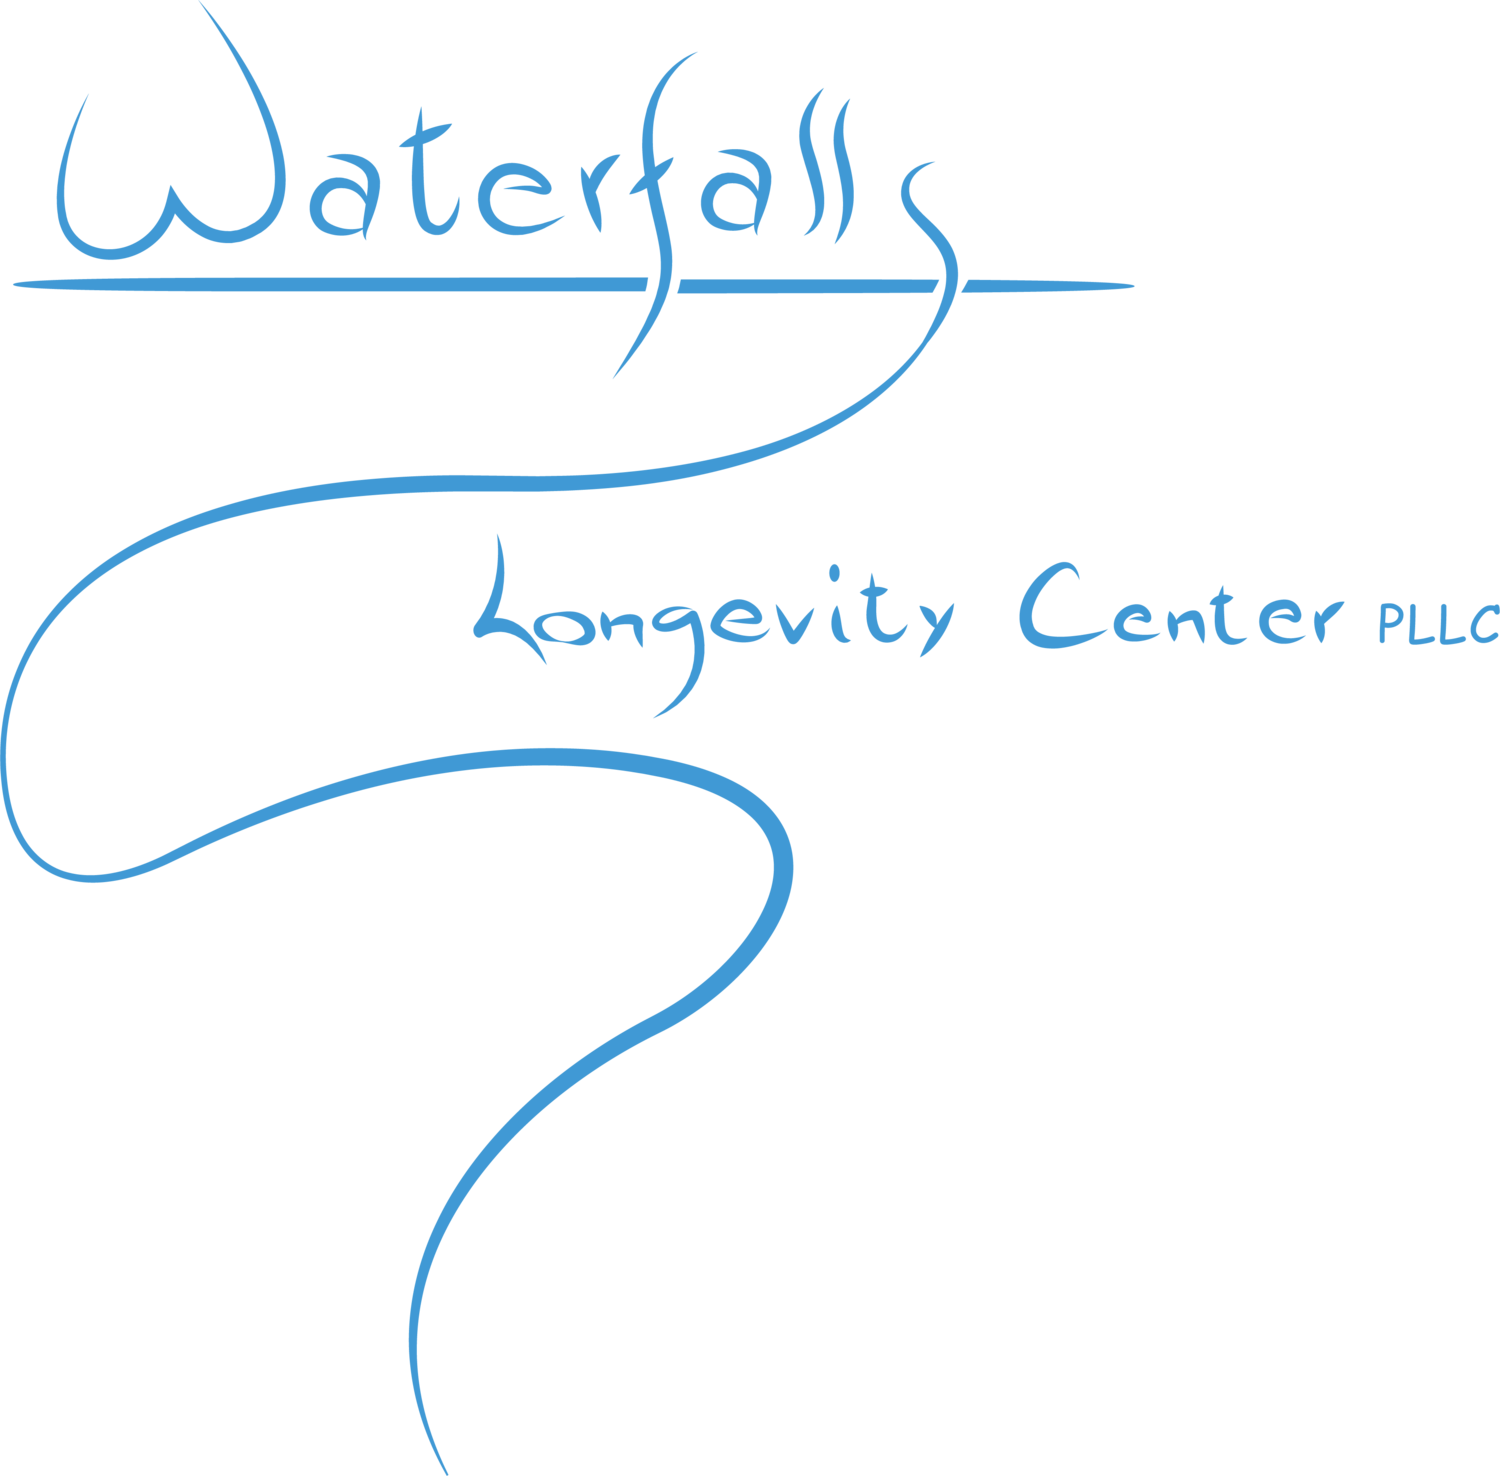 Waterfalls Longevity Center